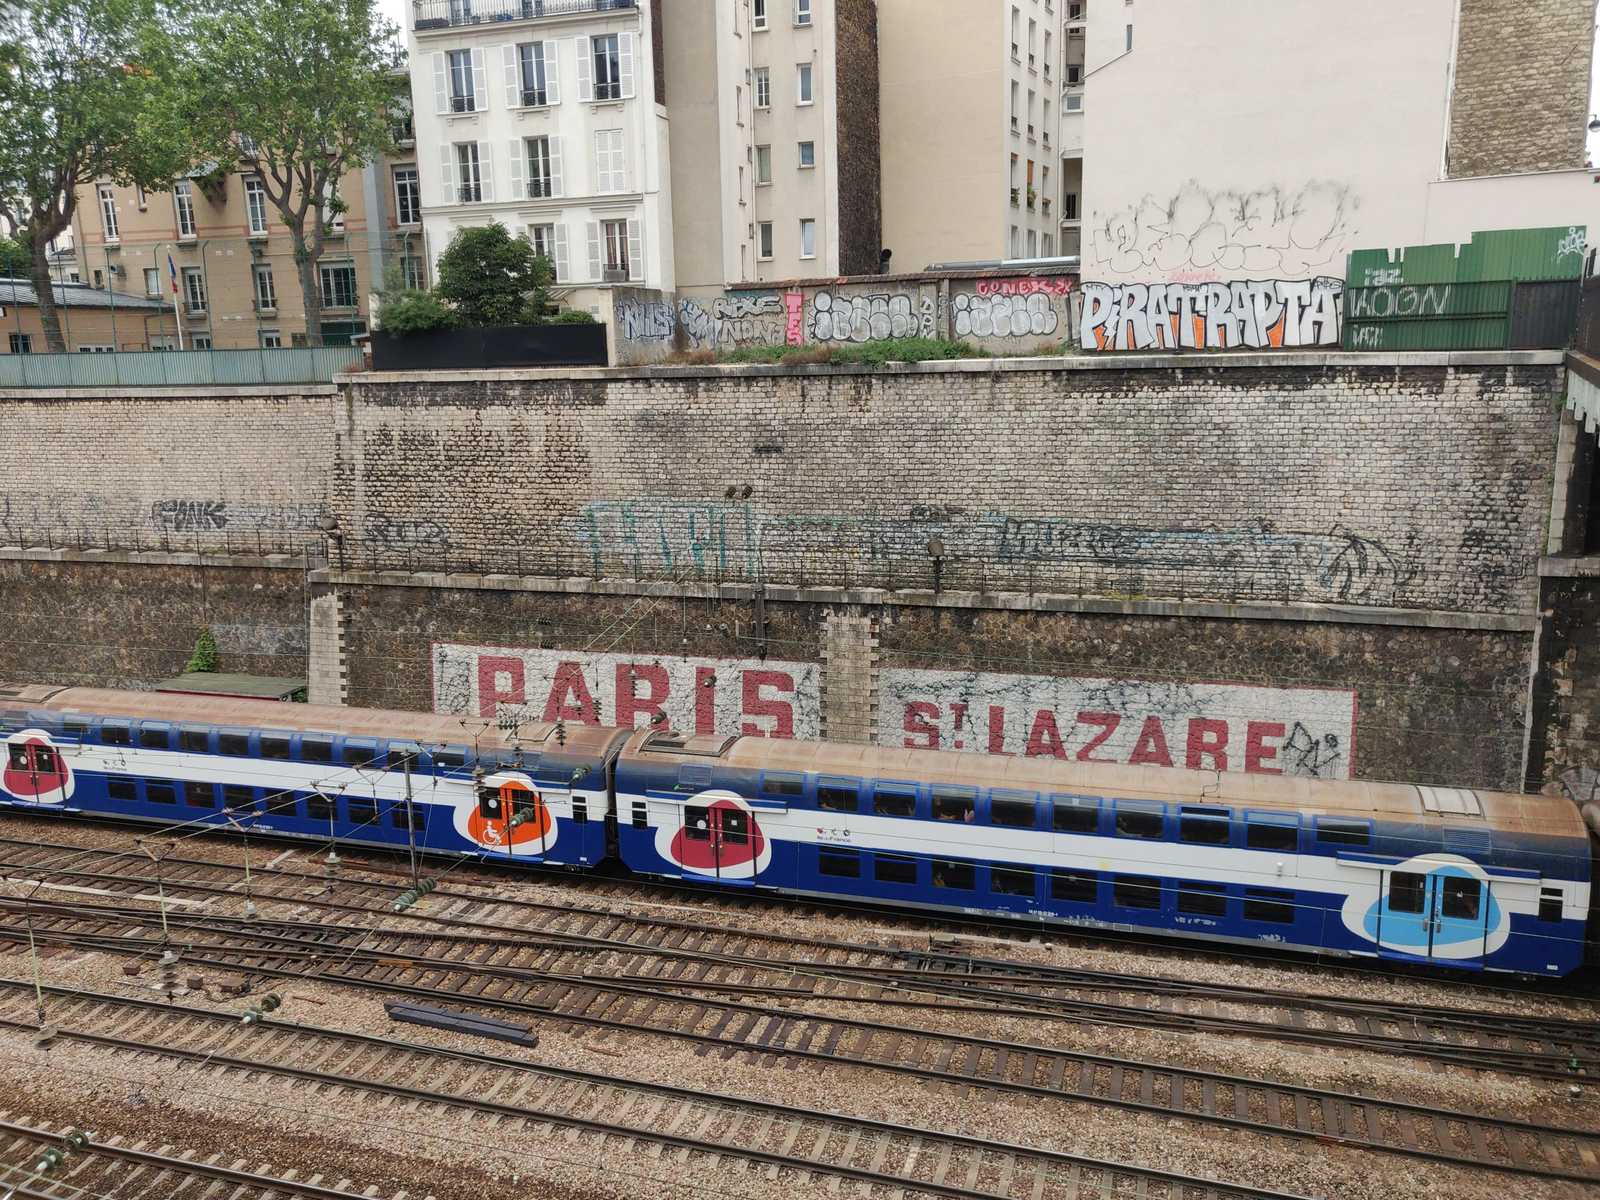 Train TER Ligne Paris-Saint Lazare, Grand-Paris métropole mobilité 17ème arrondissement mobilité culture urbaine urbanisme relation de l'humain à l'urbain urbanauth média